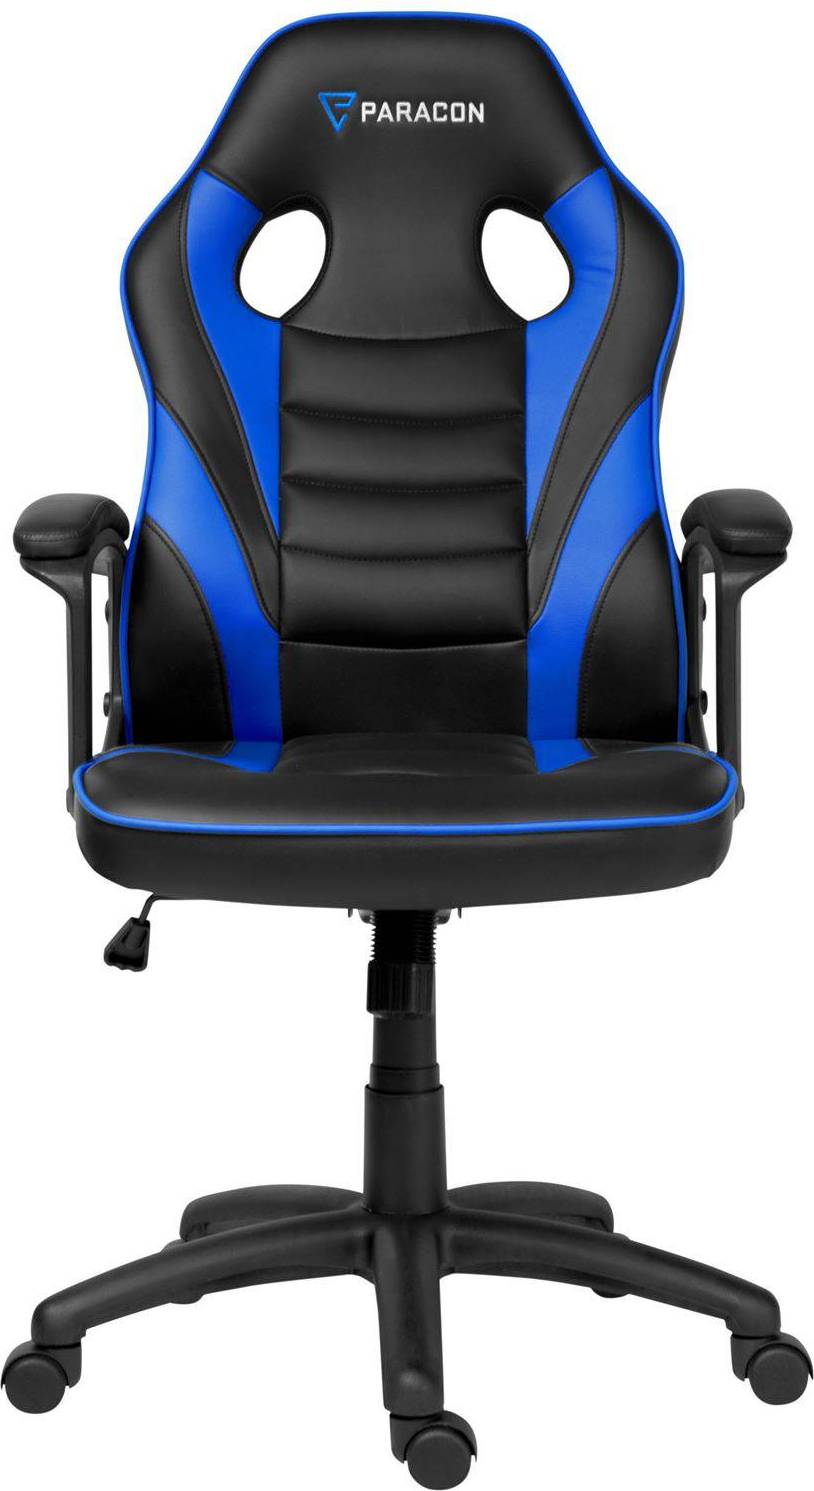  Bild på Paracon Squire Gaming Chair - Black/Blue gamingstol